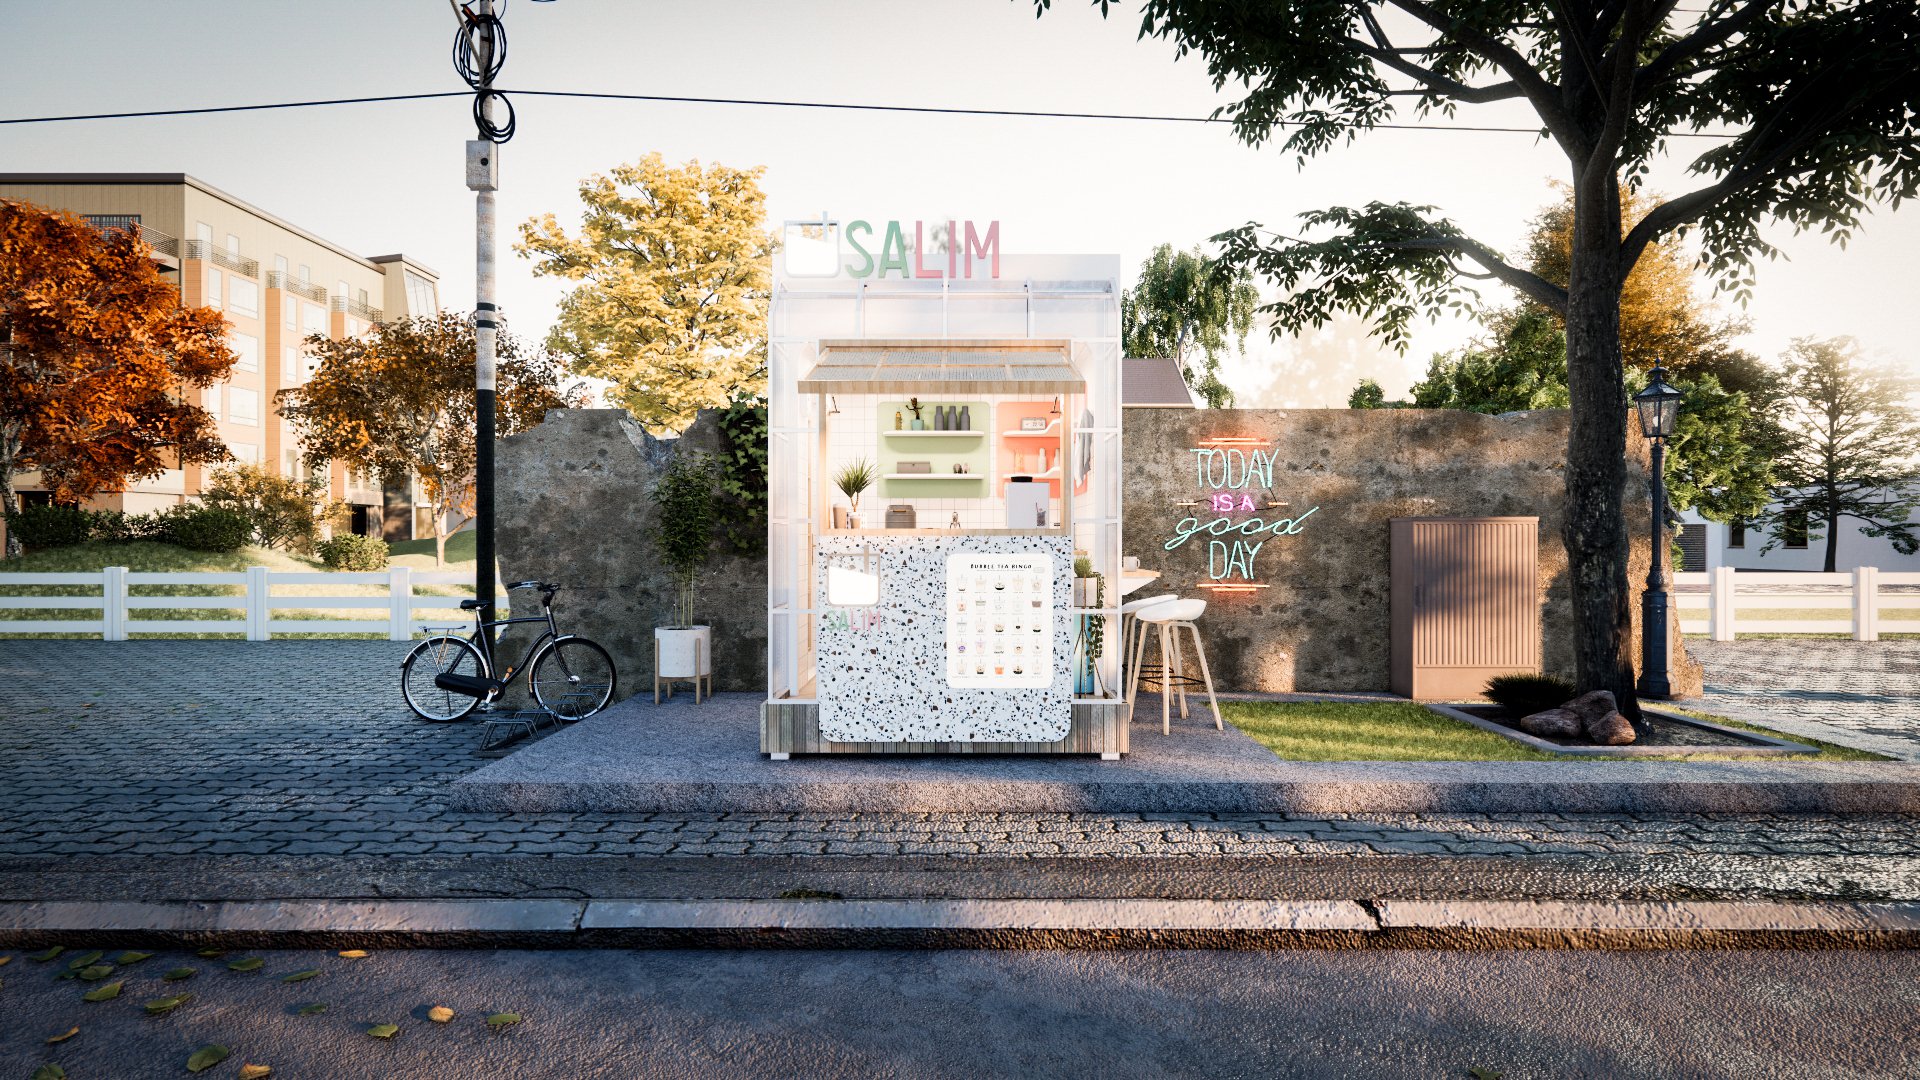 งานออกแบบคีออส ออกแบบร้านค้า Kiosk ร้านขายชานมไข่มุก เพื่อสุขภาพ “Salim” ที่เป็นชื่อของขนมหวาน 